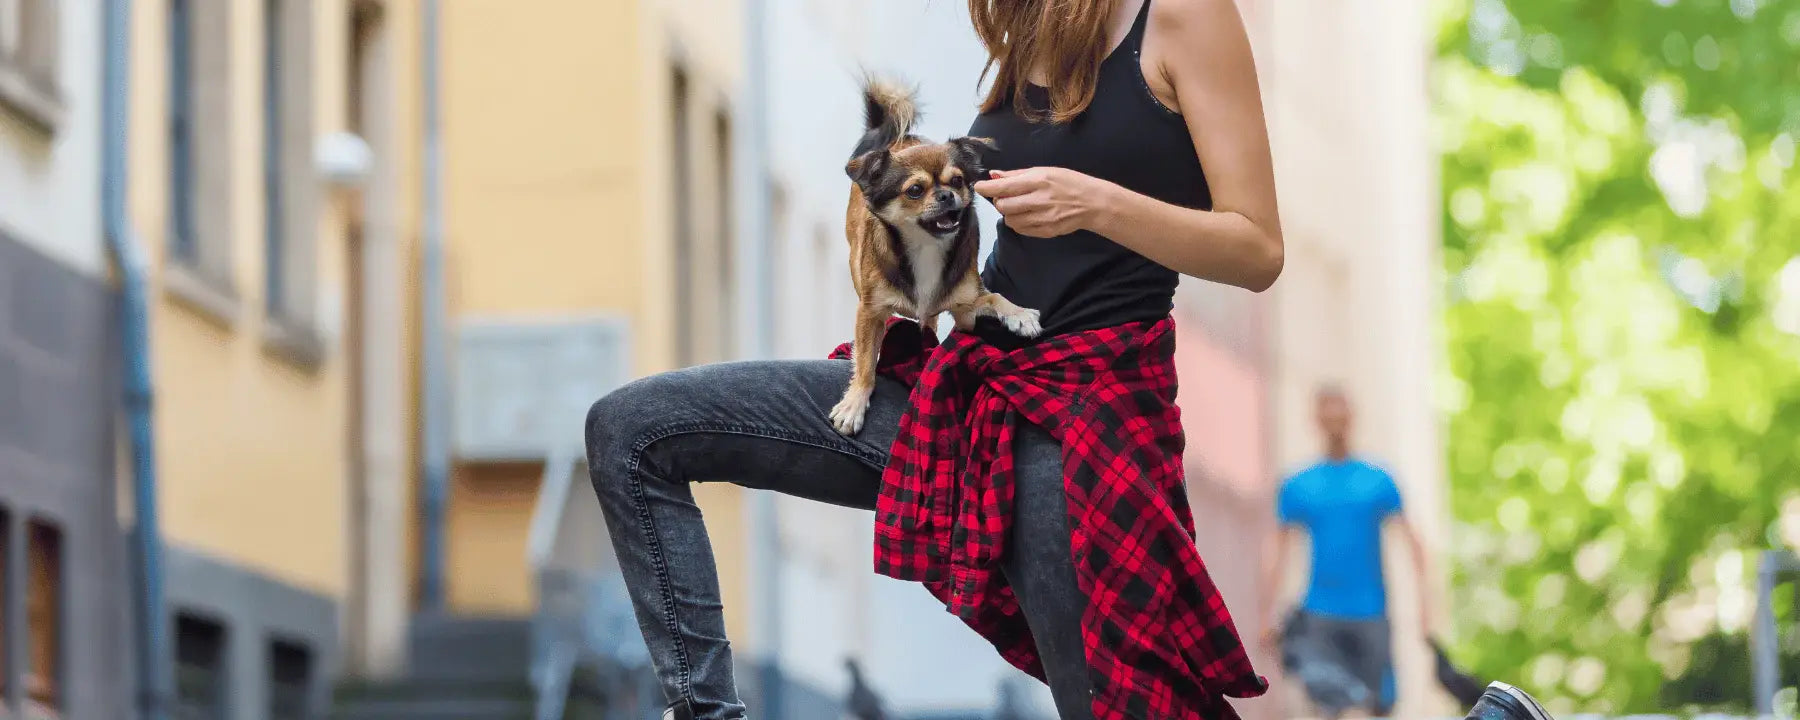 Eine tanzende Frau mit ihrem Hund auf dem Arm